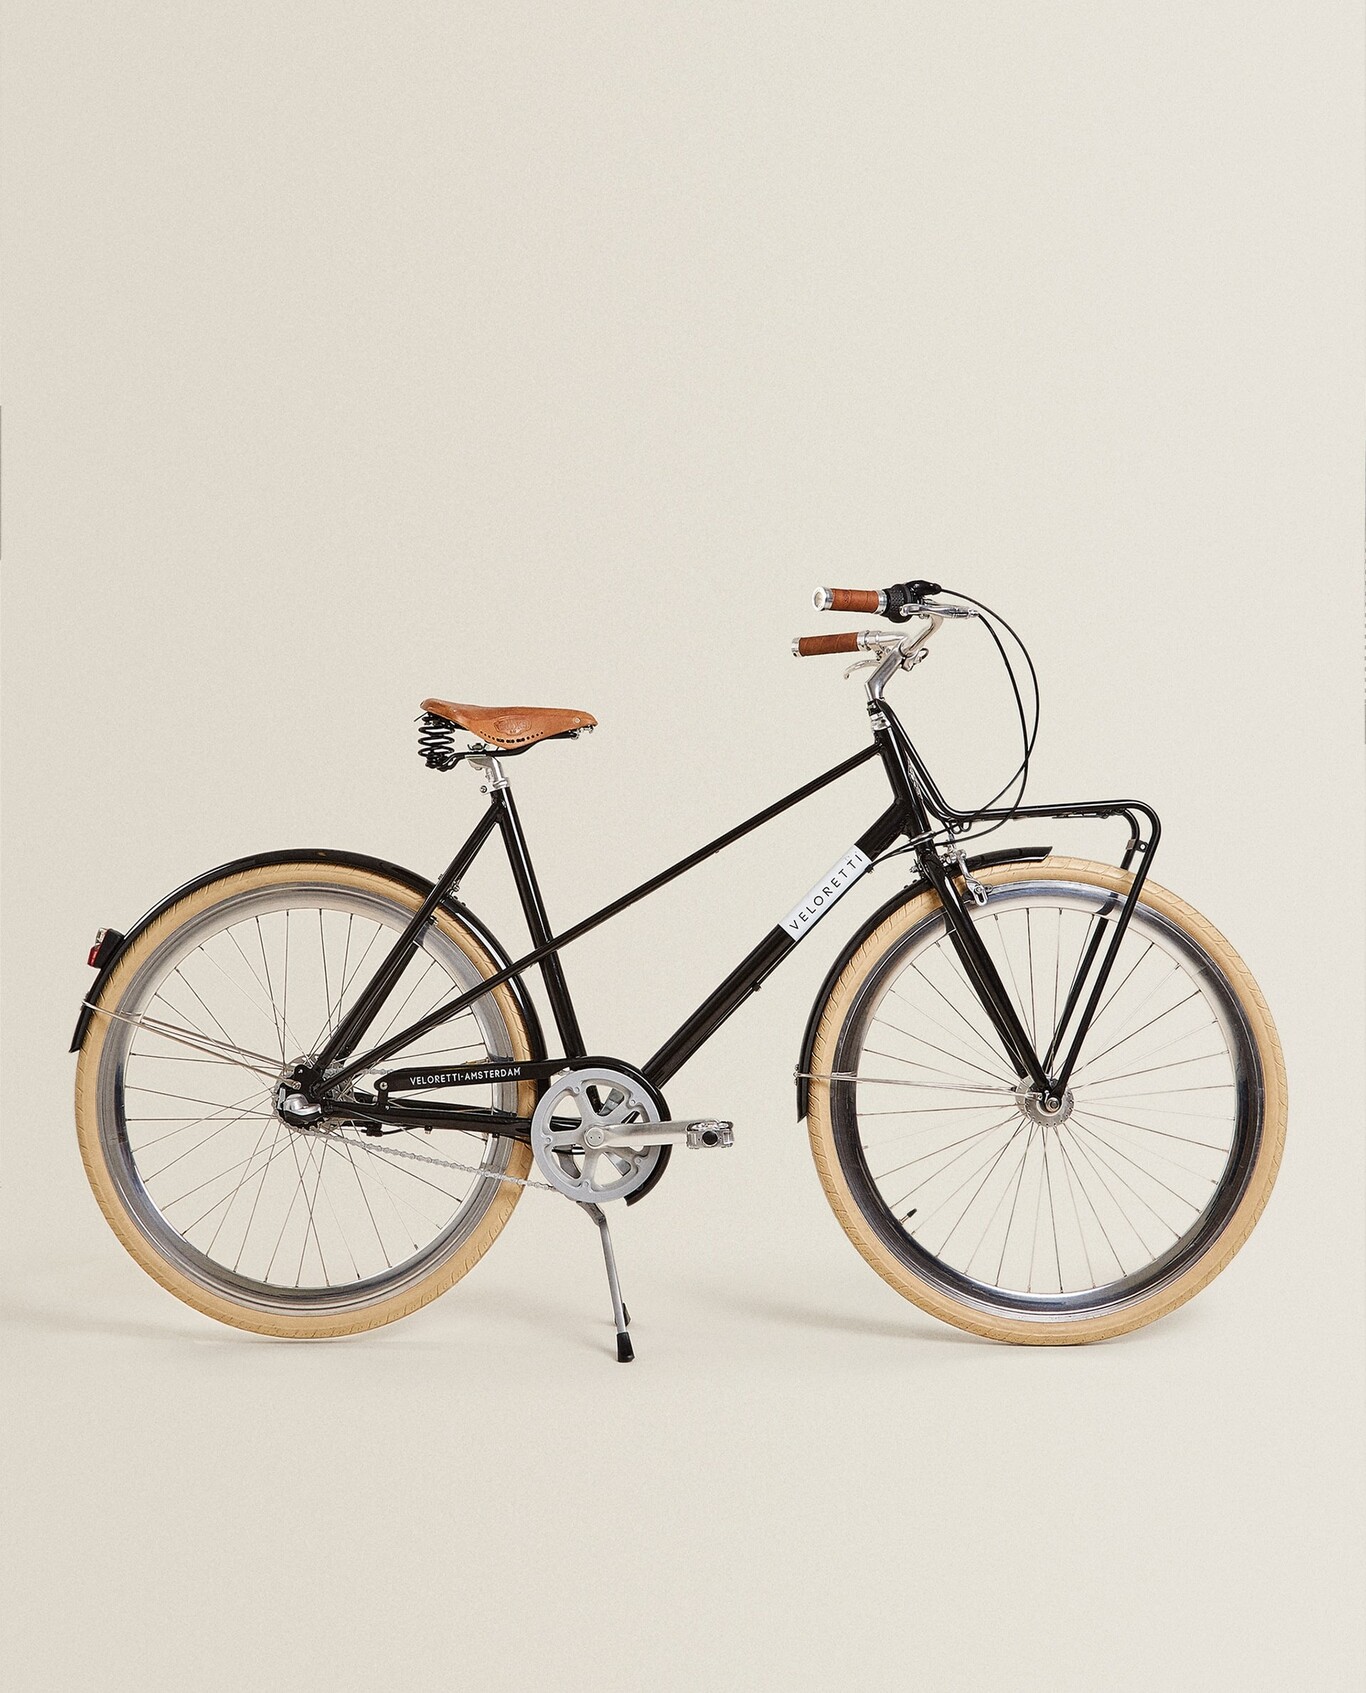 Lo nuevo de Zara Home: Las bicicletas con toque retro